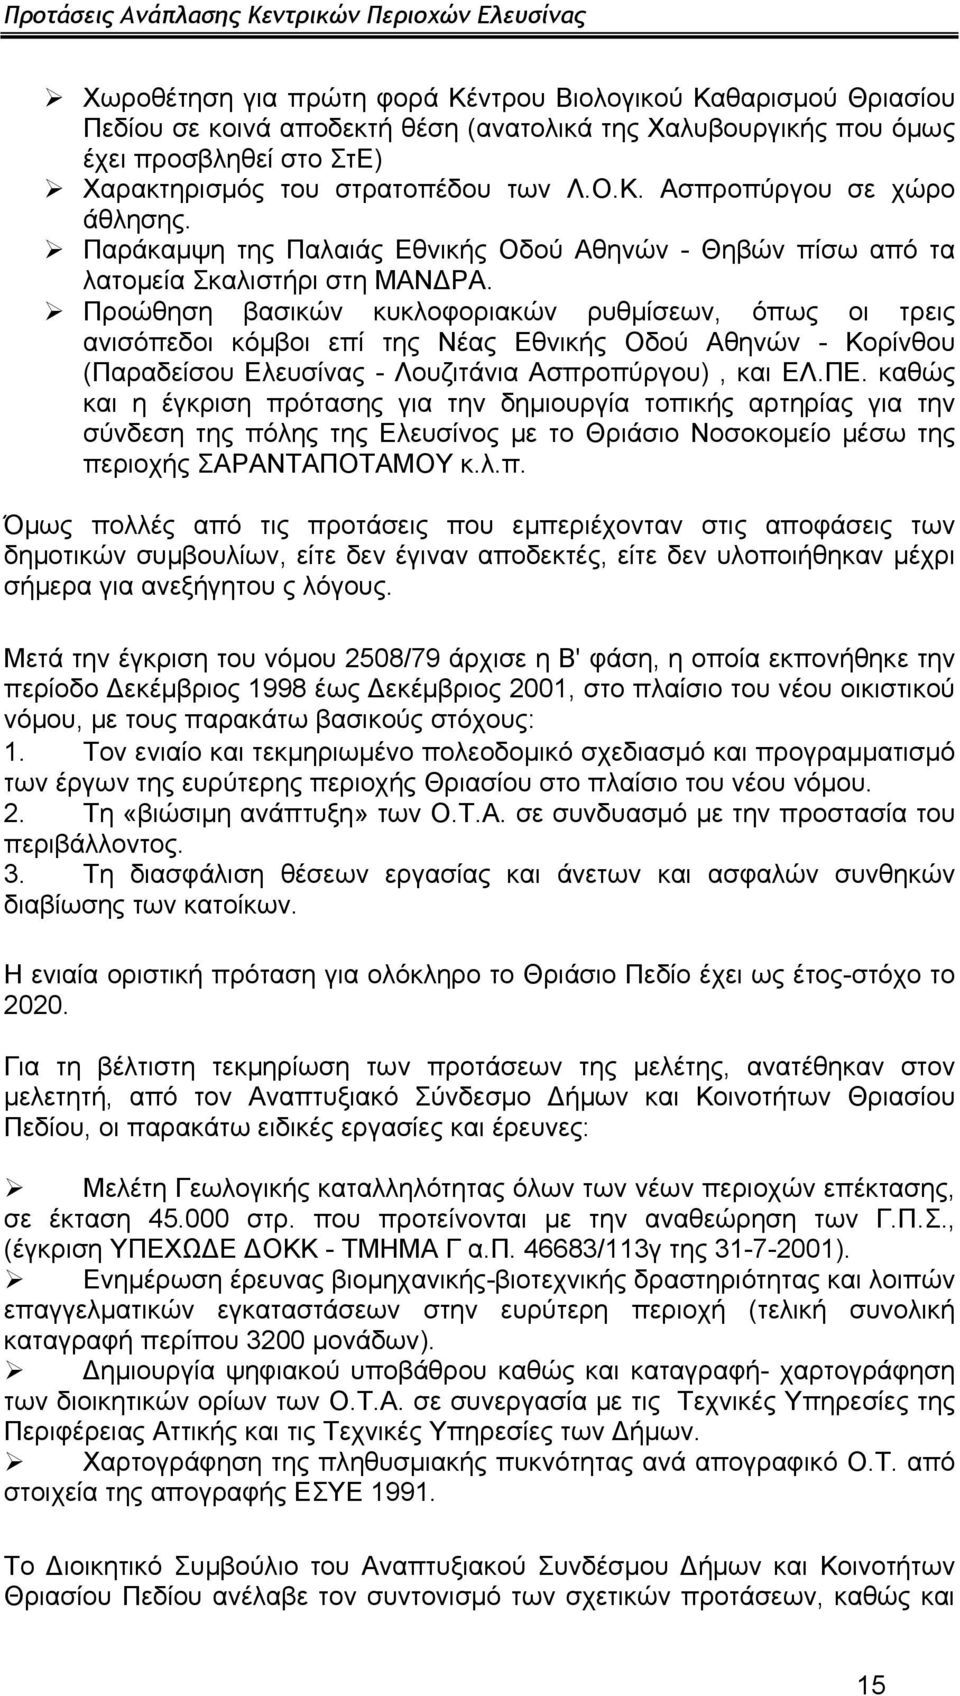 Προώθηση βασικών κυκλοφοριακών ρυθμίσεων, όπως οι τρεις ανισόπεδοι κόμβοι επί της Νέας Εθνικής Οδού Αθηνών - Κορίνθου (Παραδείσου Ελευσίνας - Λουζιτάνια Ασπροπύργου), και ΕΛ.ΠΕ.